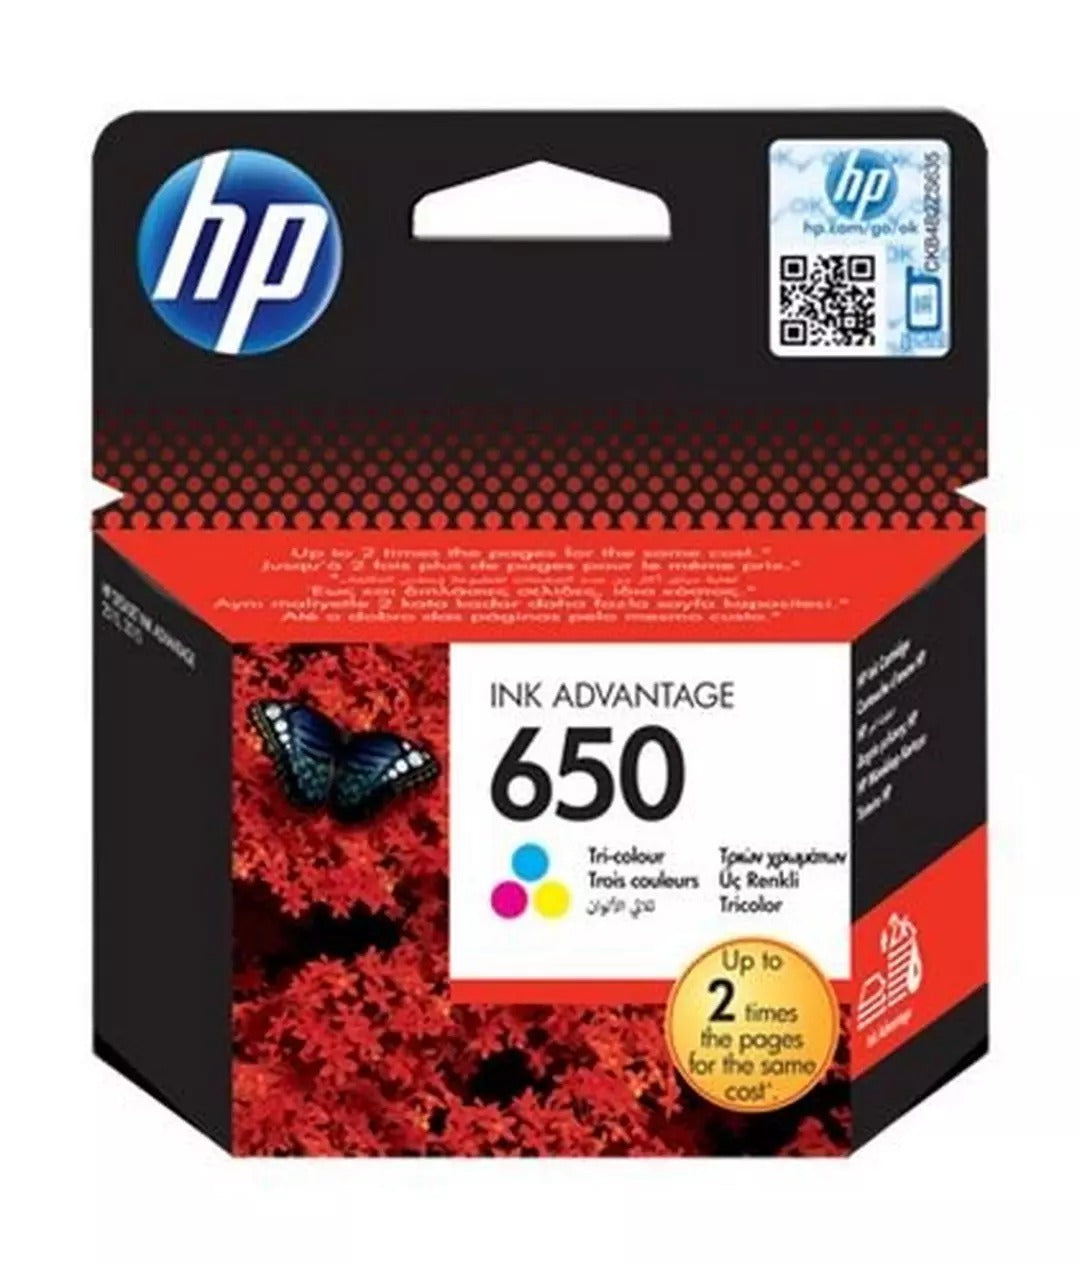 HP 650 Original Tri-color Ink Cartridge